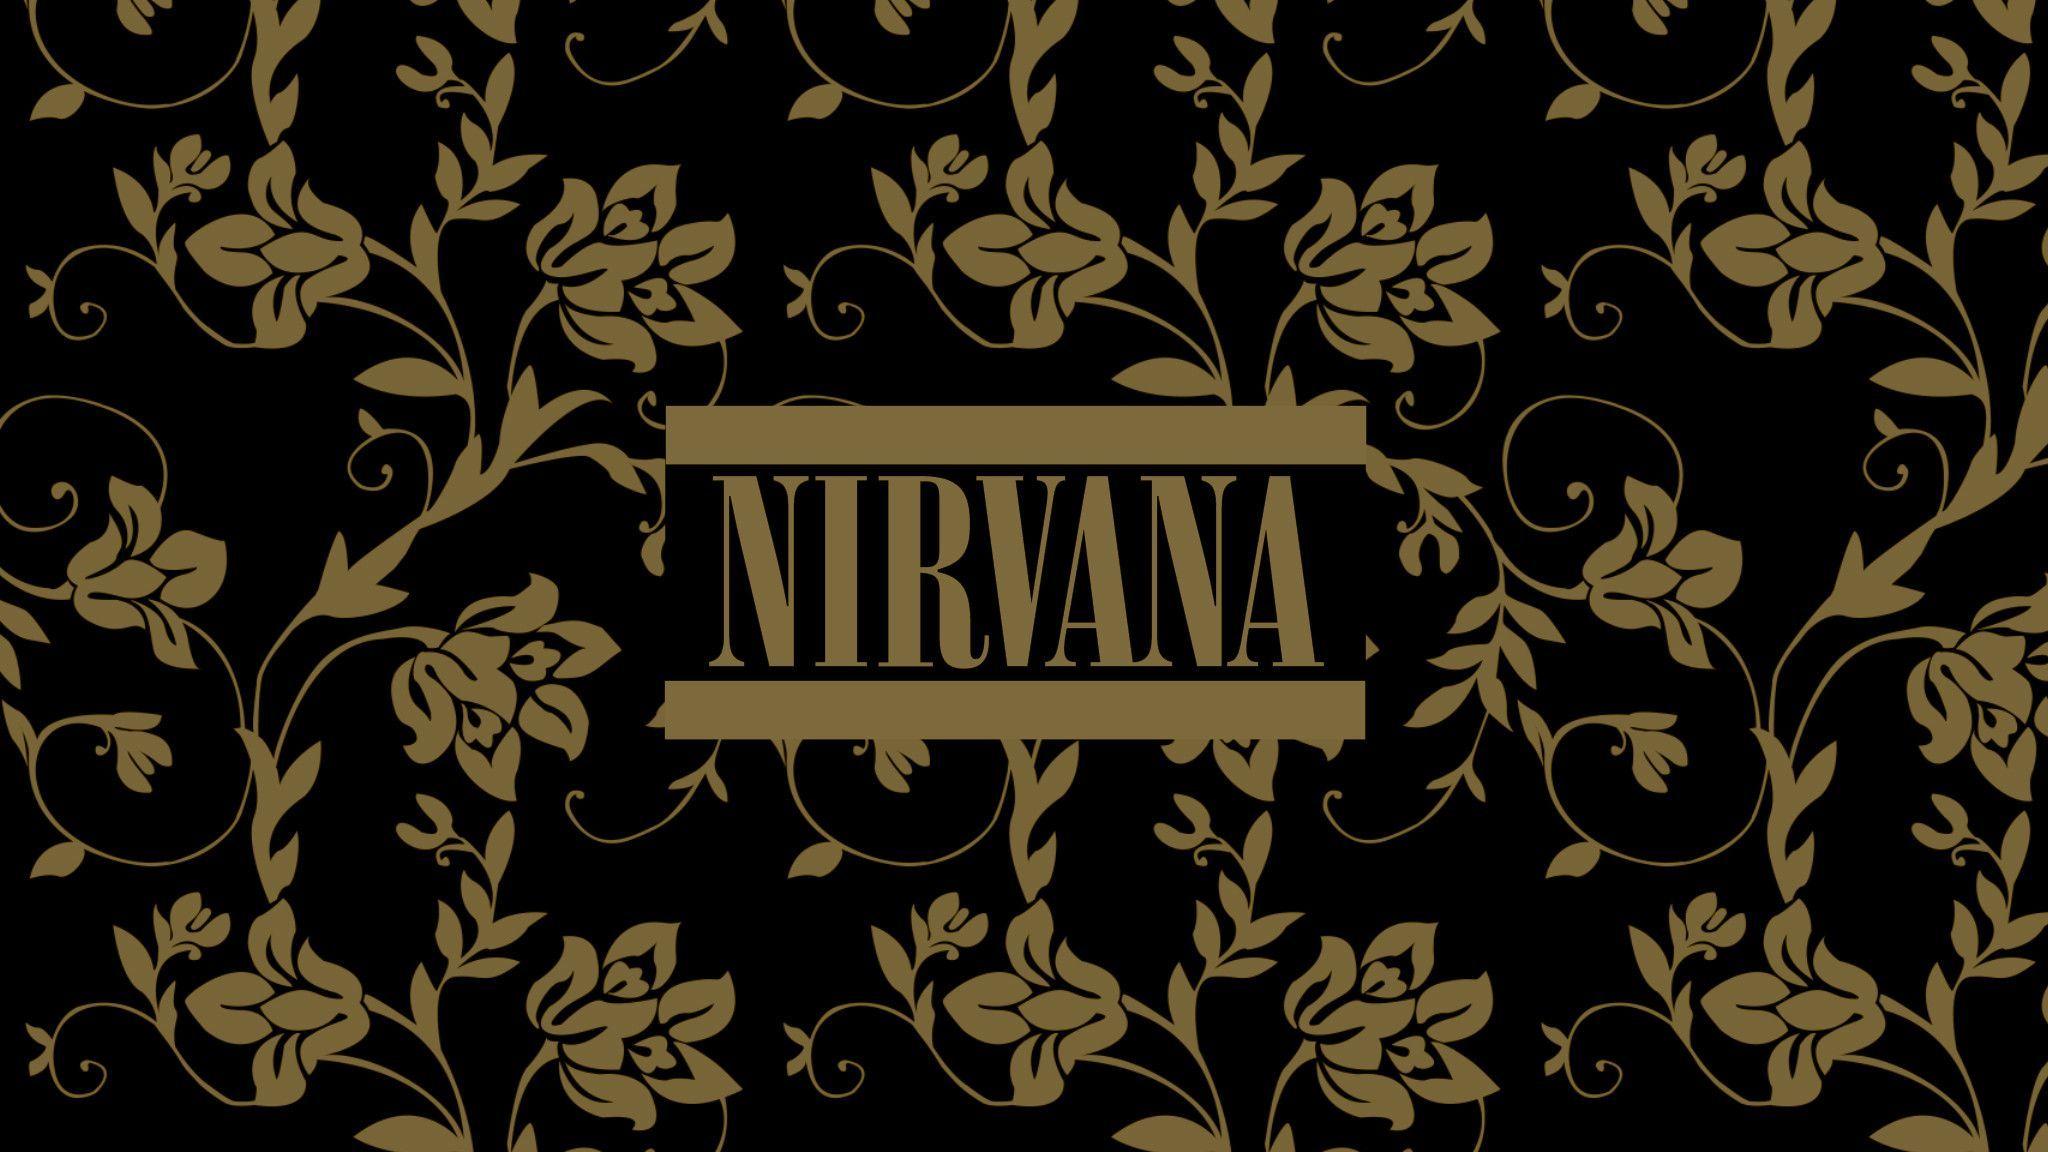 Nirvana wallpaper, Band wallpaper .com